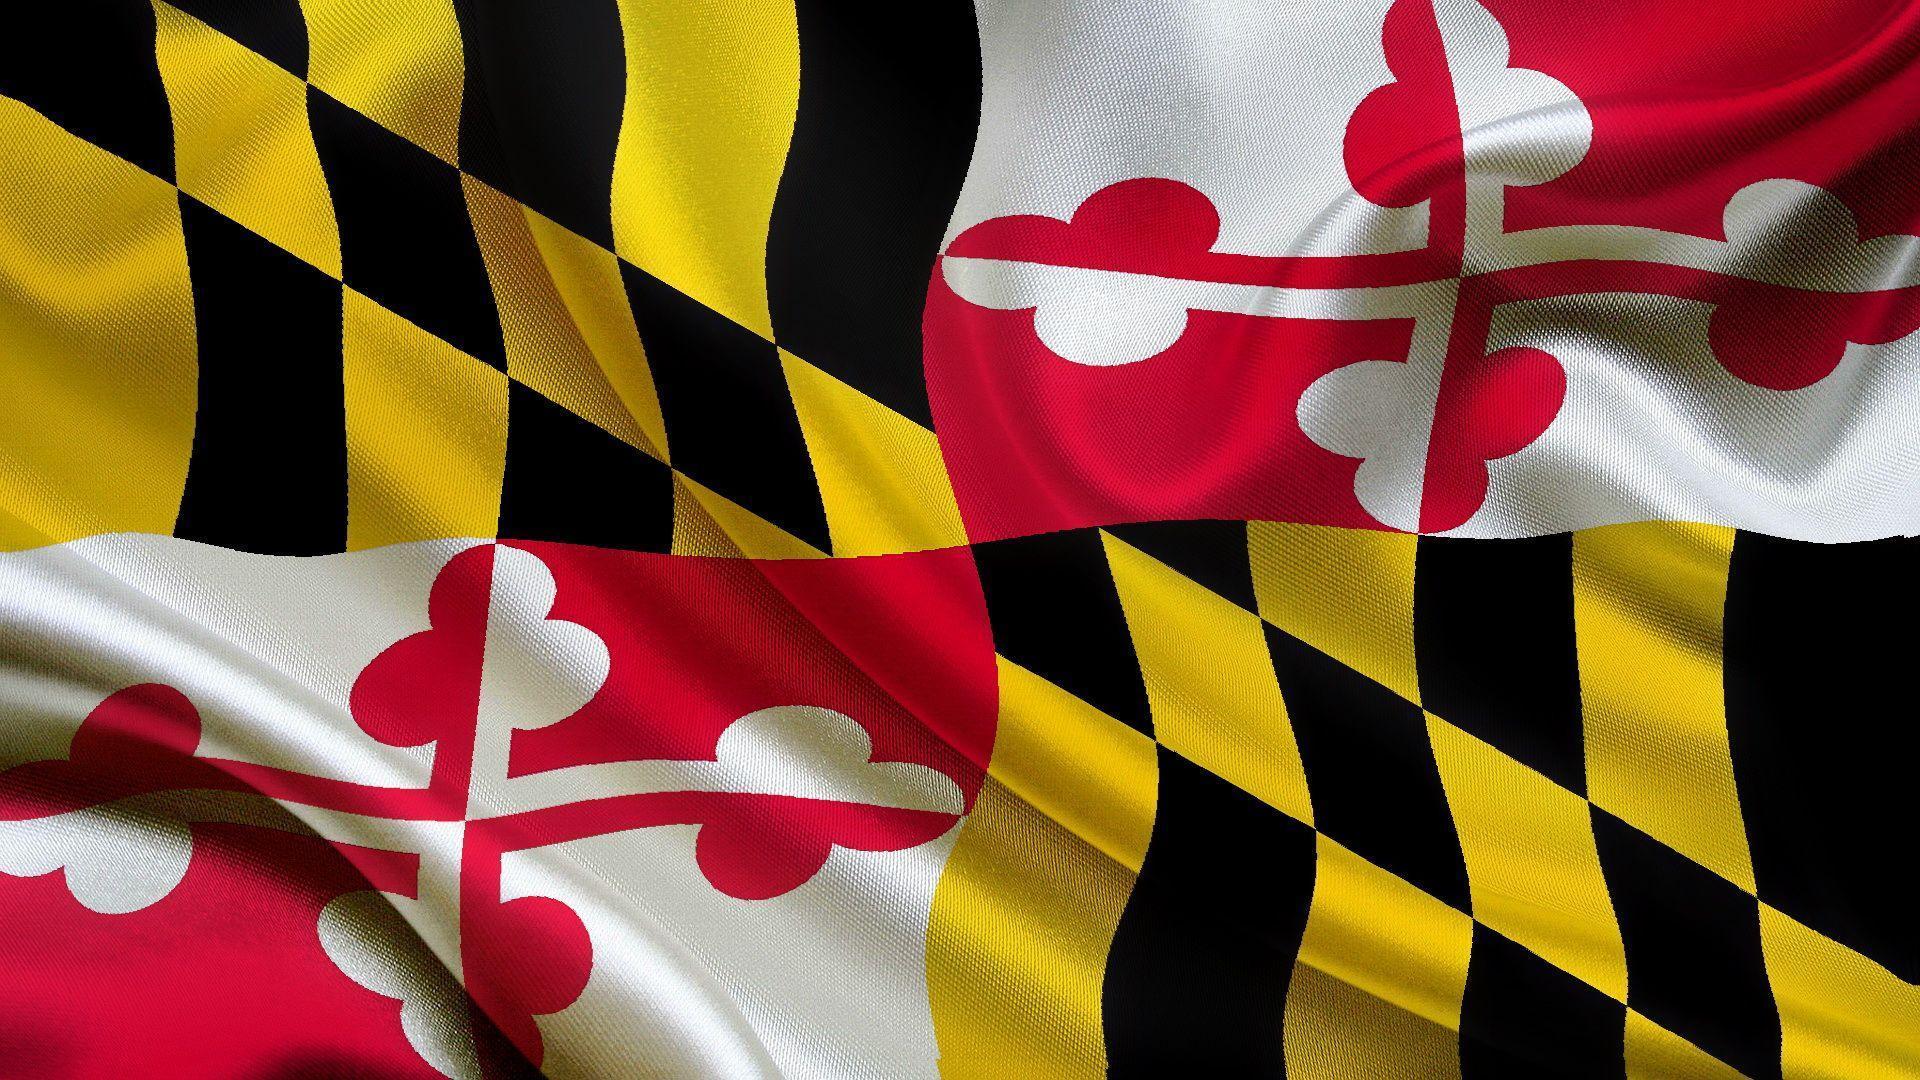 USA Maryland Flag 1920x1080